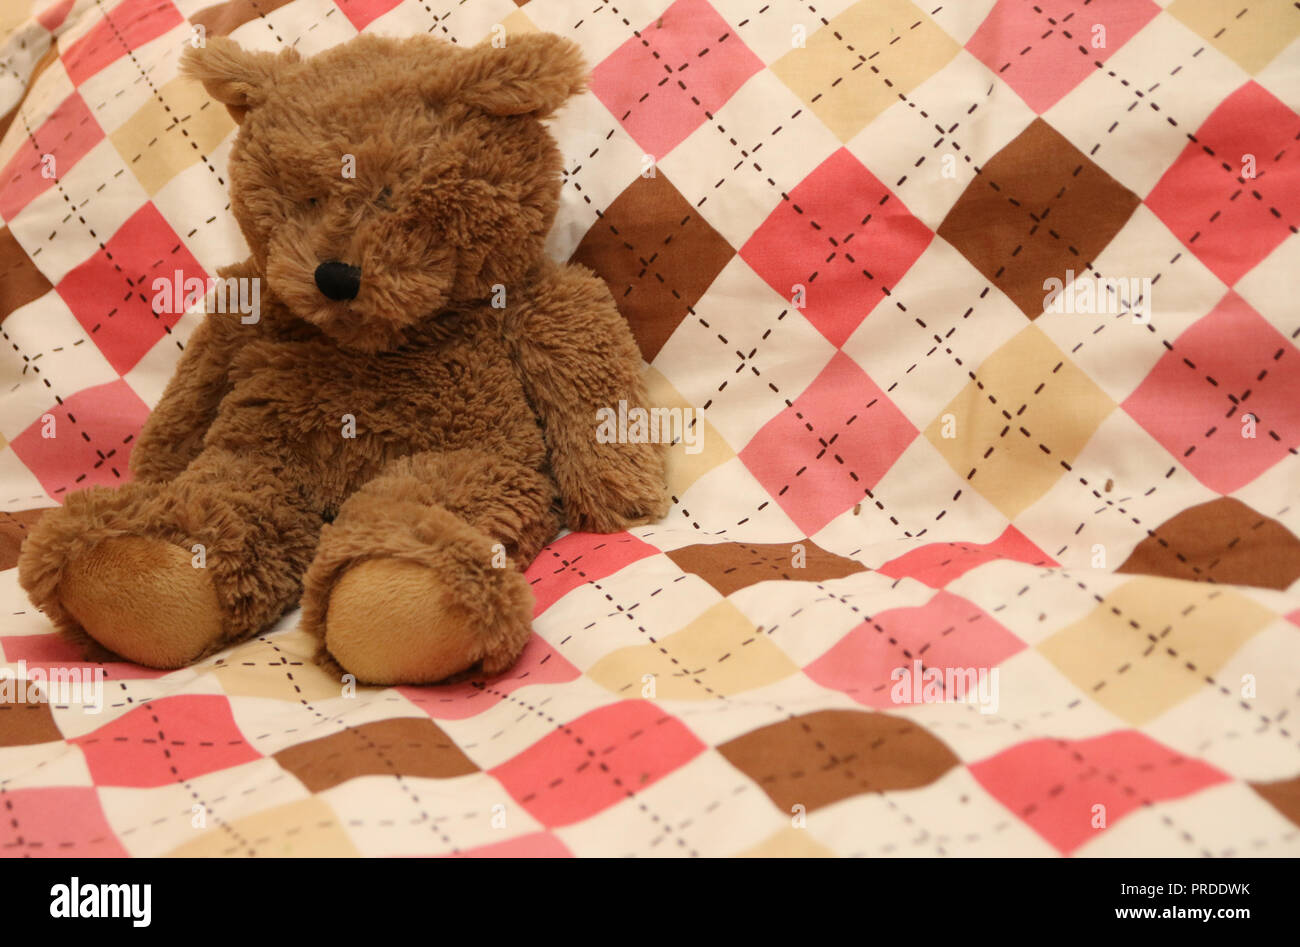 A fuzzy little teddy bear sitting on an argyle blanket. Stock Photo